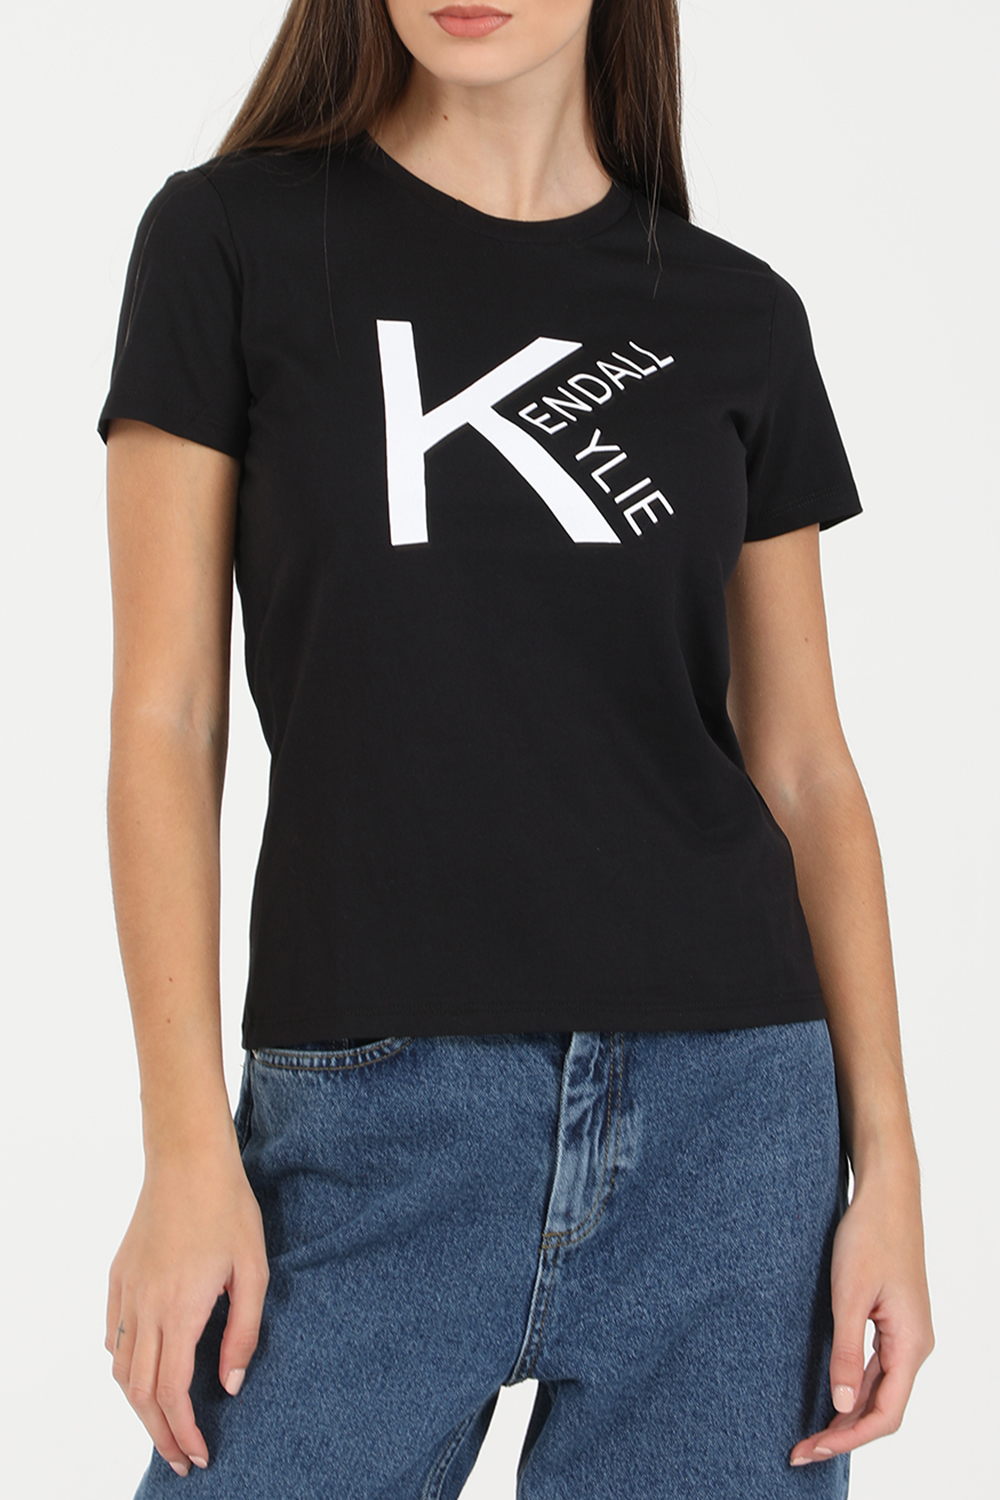 Γυναικεία/Ρούχα/Μπλούζες/Κοντομάνικες KENDALL + KYLIE - Γυναικείο t-shirt KENDALL + KYLIE ACTIVE LOGO V4 μαύρο